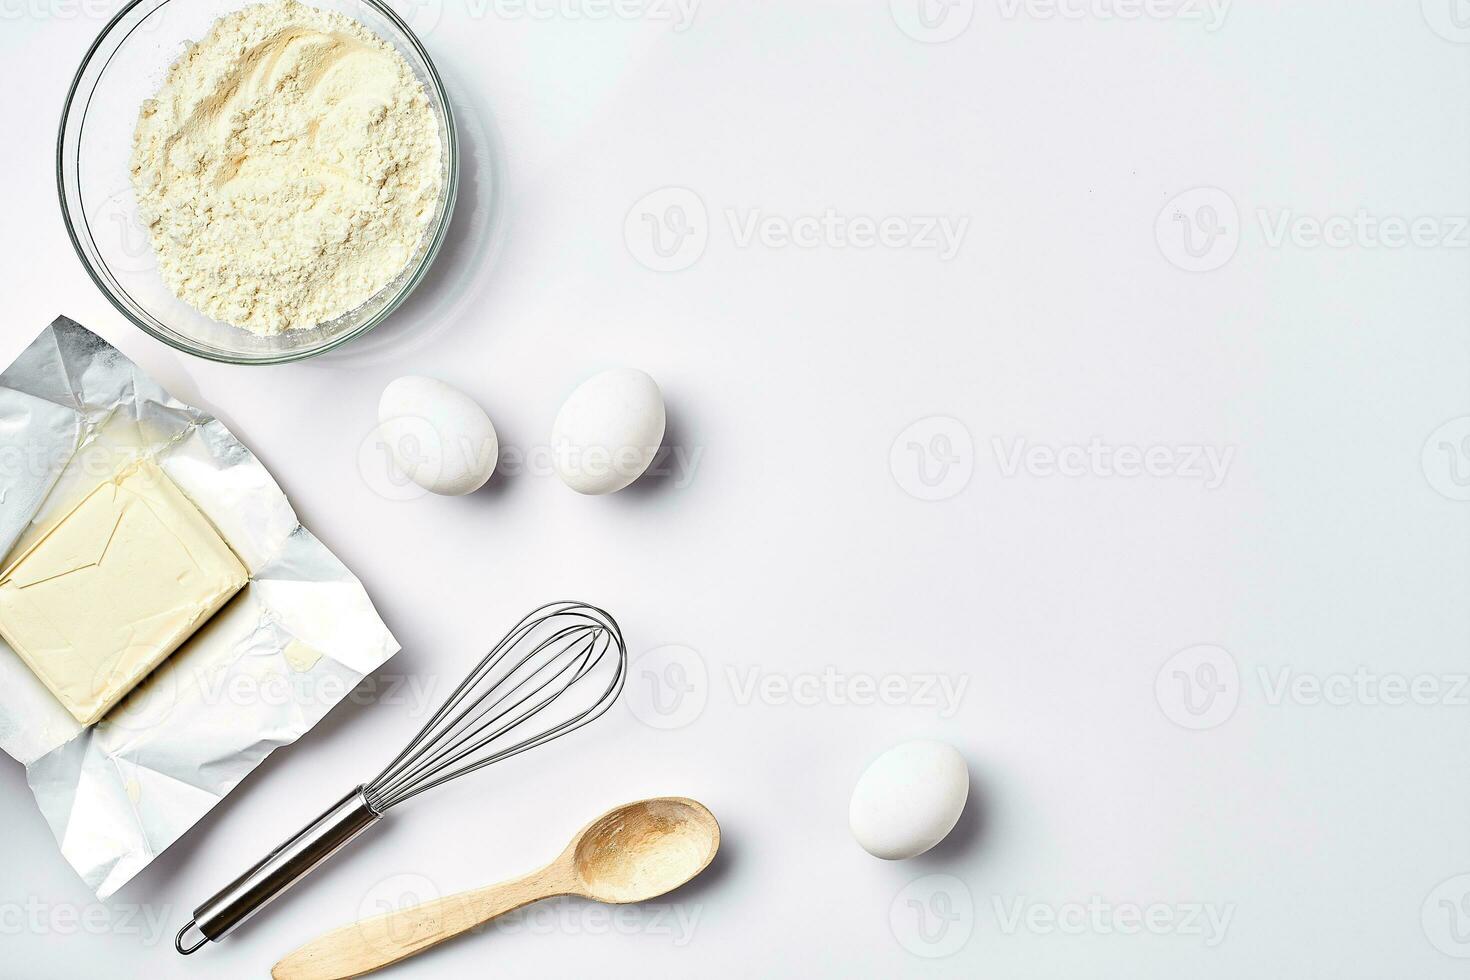 voorbereiding van de deeg. ingrediënten voor de deeg - meel, boter, eieren en divers hulpmiddelen. Aan wit achtergrond. vrij ruimte voor tekst . top visie foto